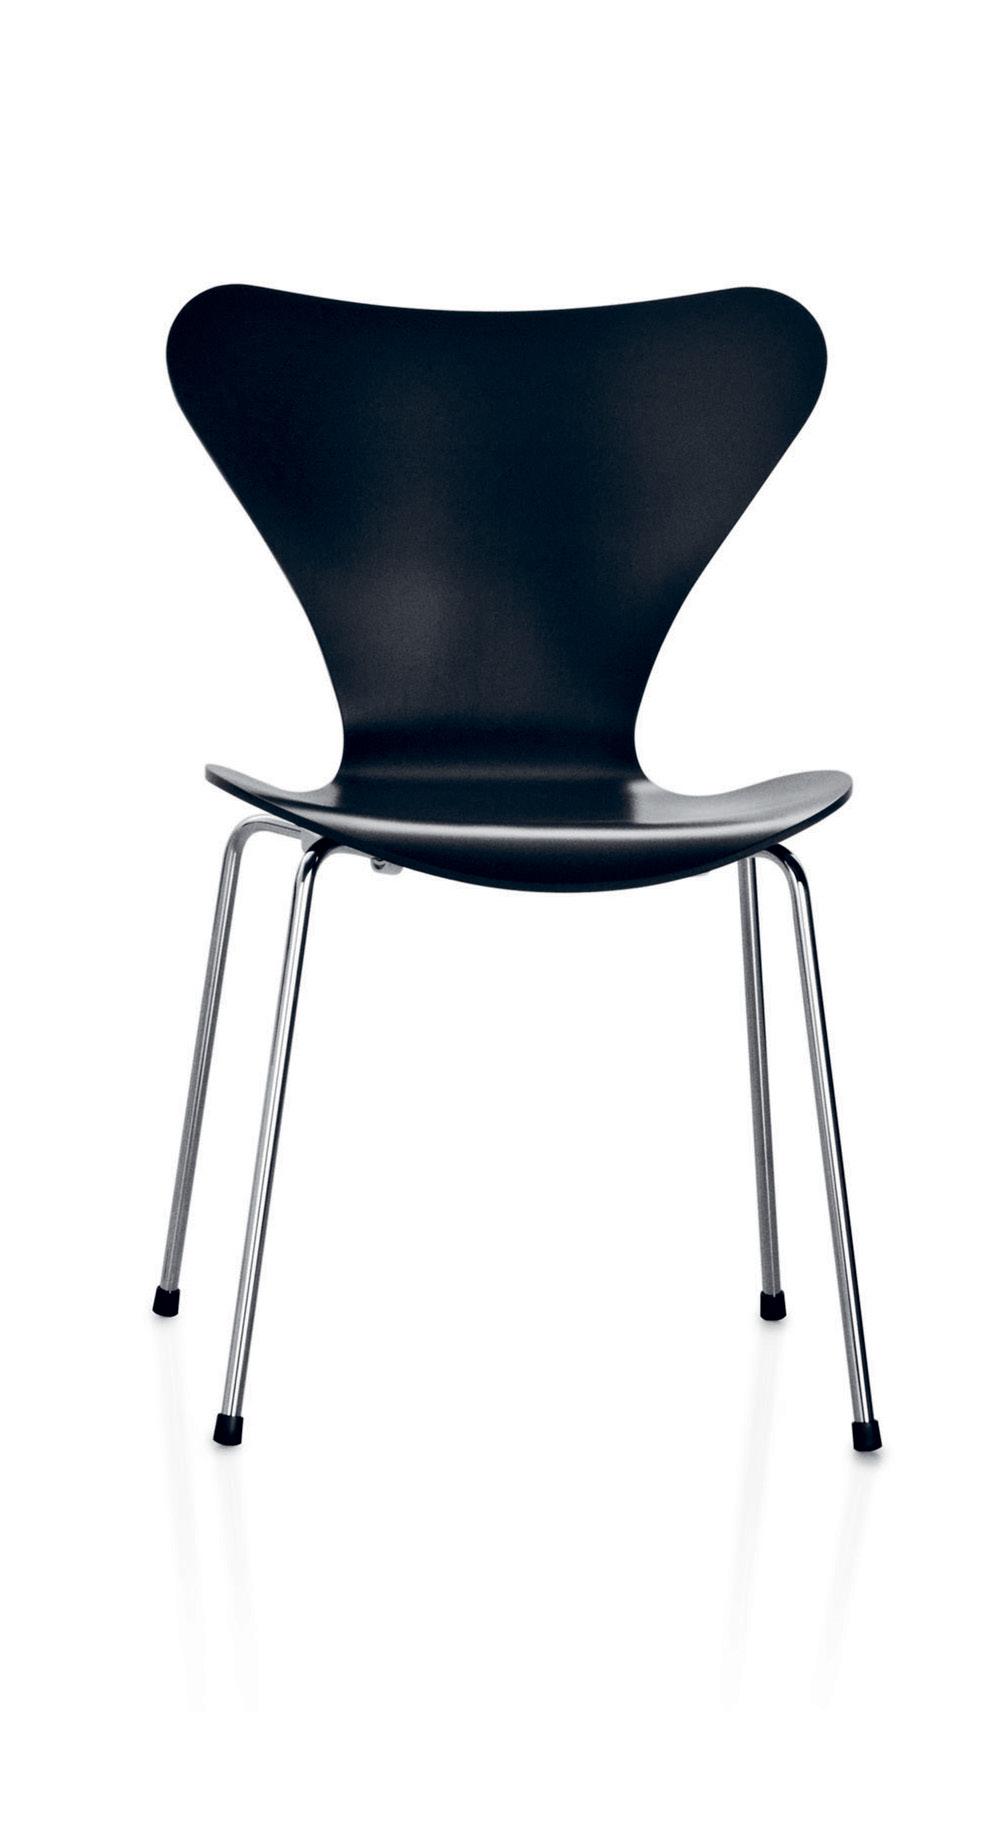 Serie 7 Serie 7 designad av Arne Jacobsen är den överlägset mest sålda stolen i Fritz Hansens historia och kanske även i möbelhistorien.